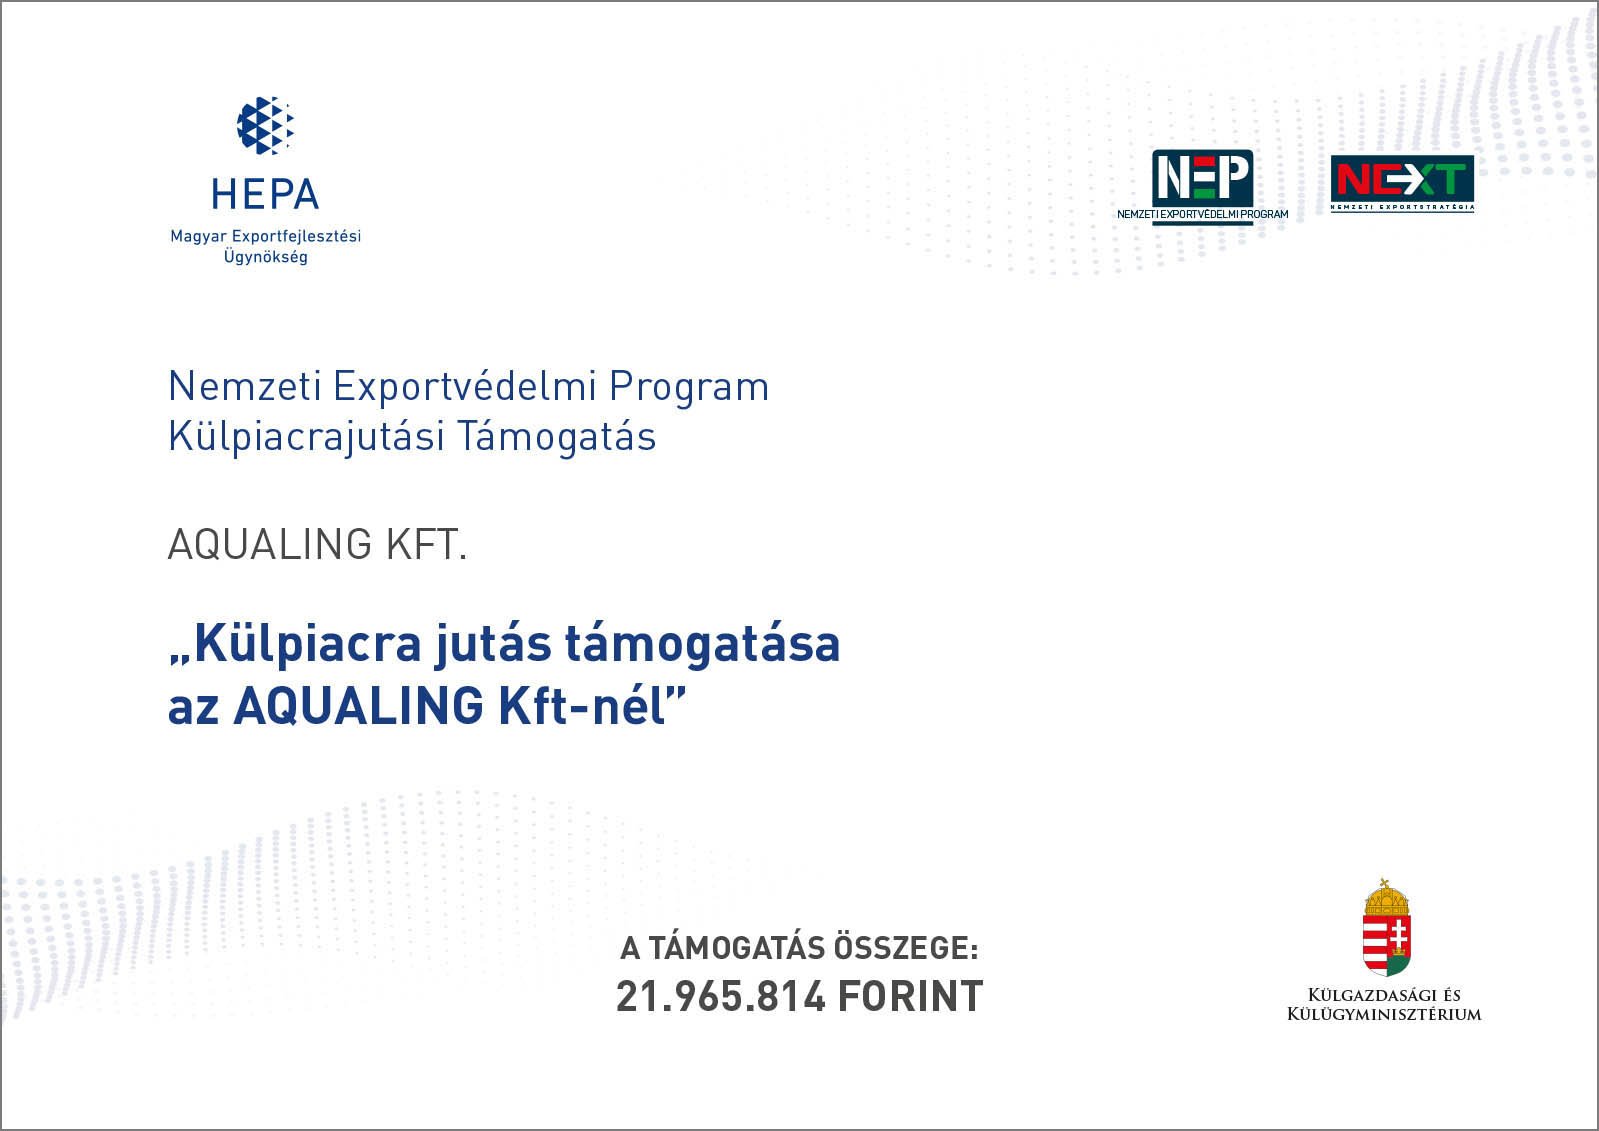 Nemzeti Exportvédelmi Program - Külpiacra jutás támogatása az Aqualing Kft-nél